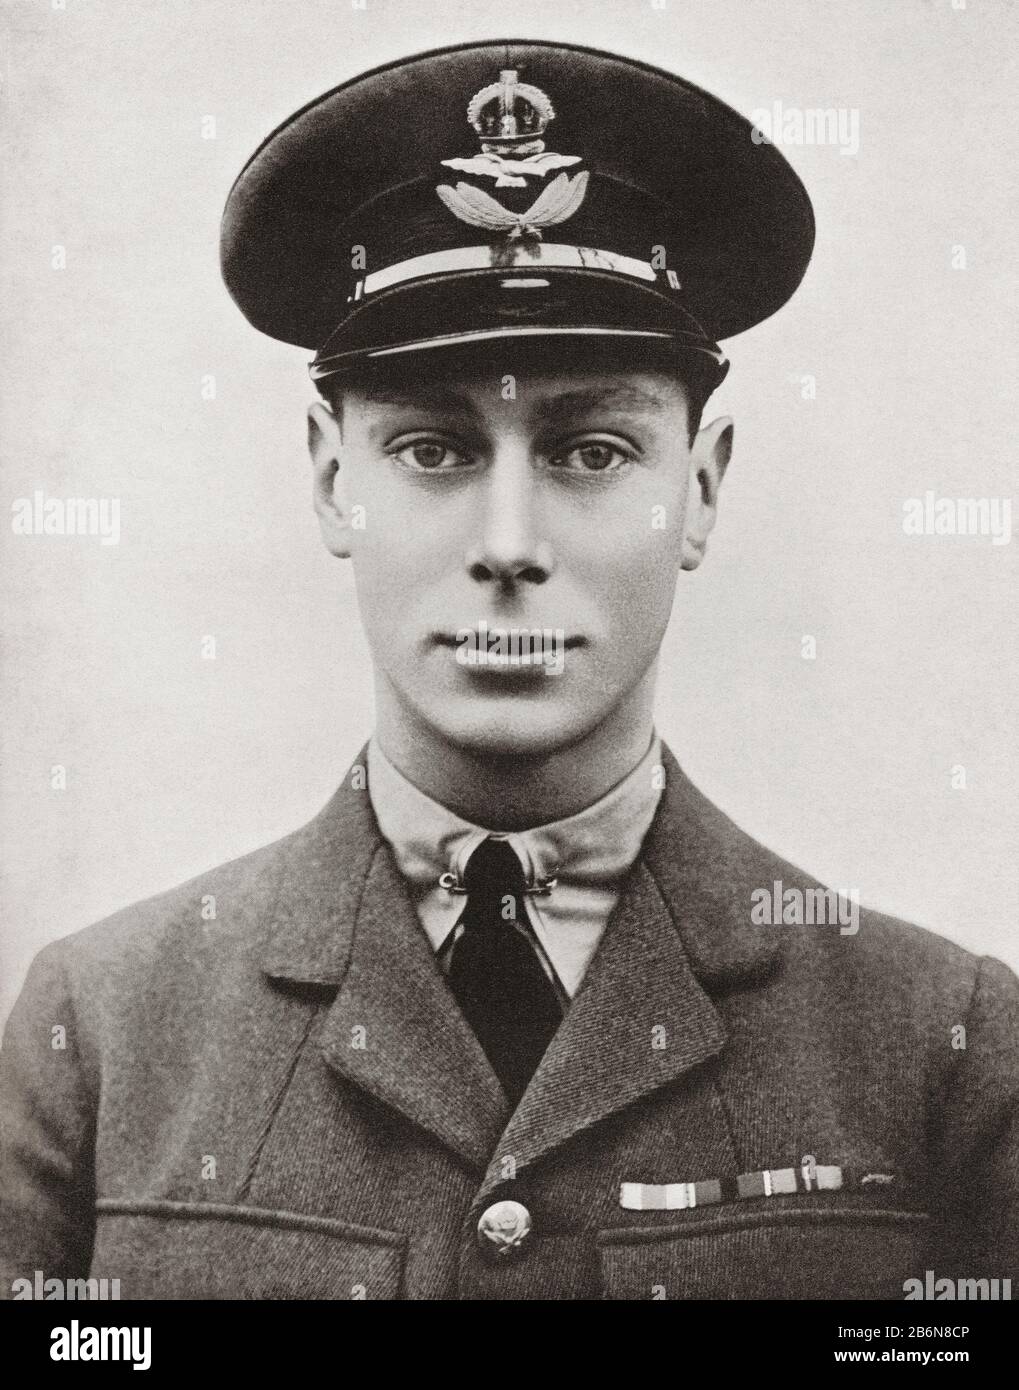 Prince Albert comme officier de la Royal Air Force. Prince Albert Frederick Arthur George, Futur George Vi, 1895 – 1952. Roi du Royaume-Uni et dominions du Commonwealth britannique. Du roi George le sixième, publié en 1937. Banque D'Images